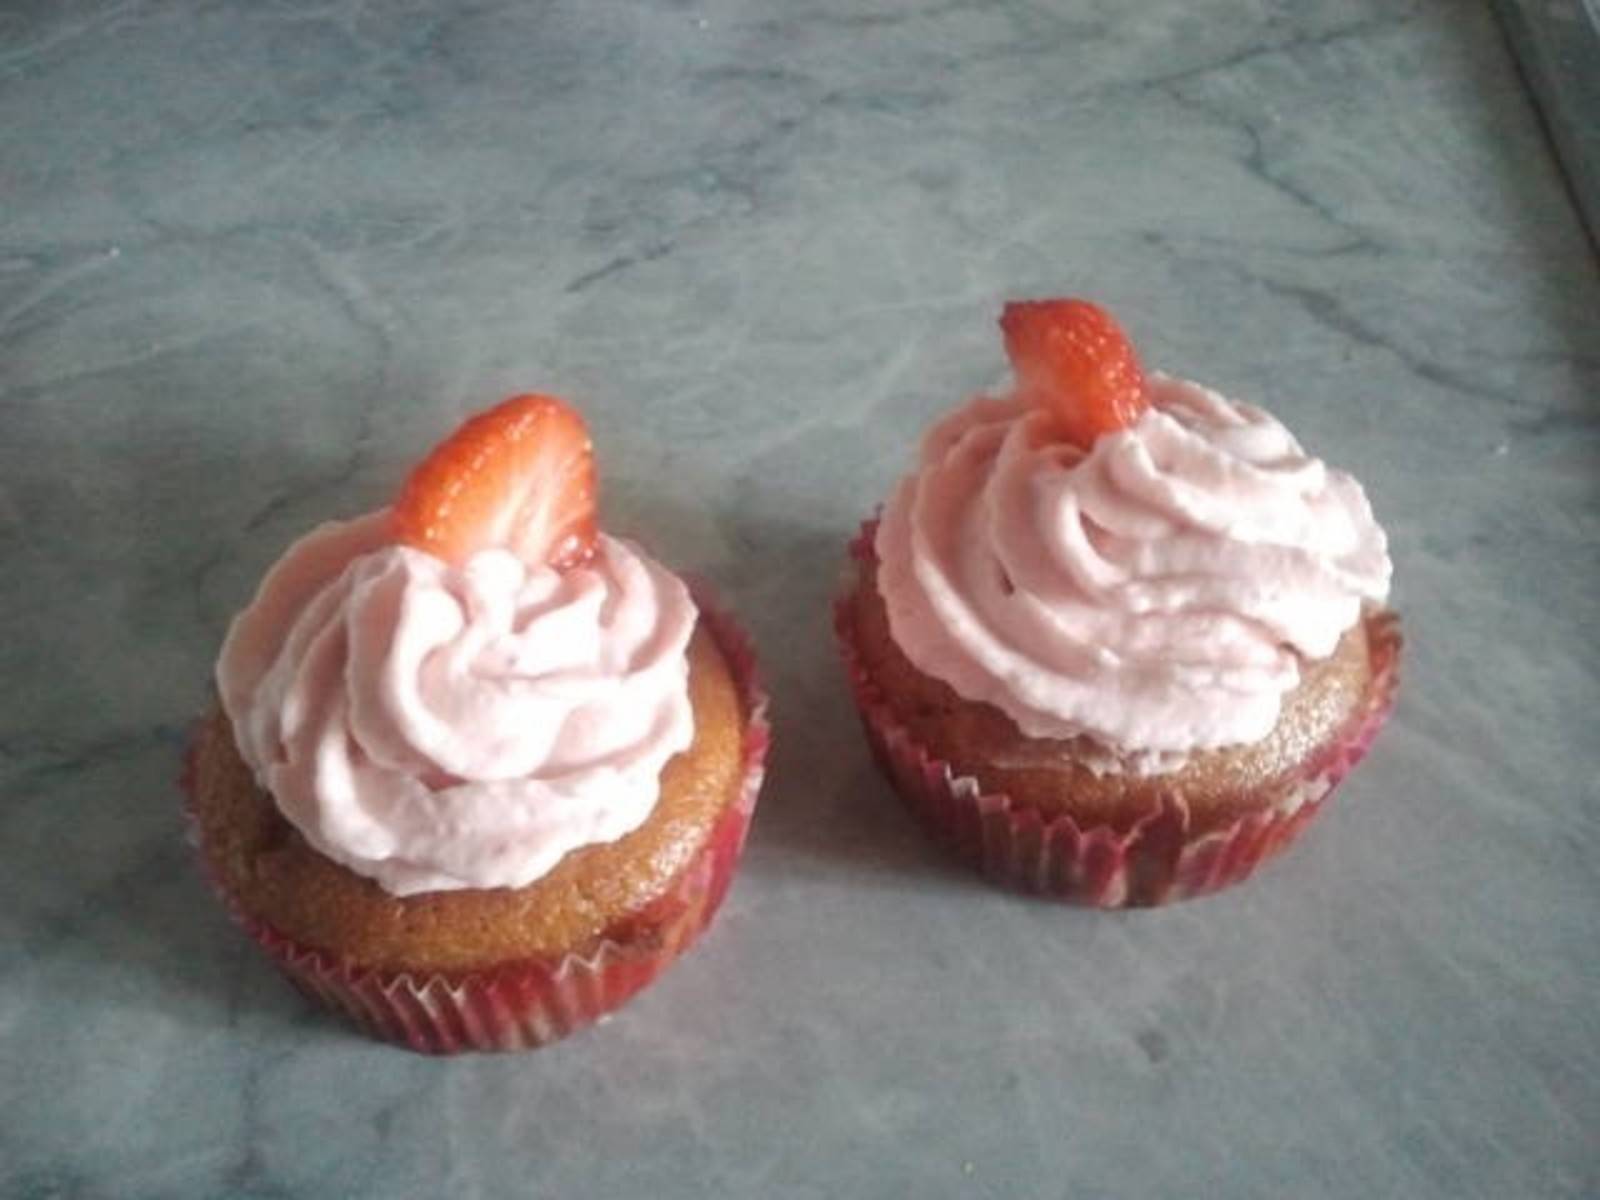 Cupcakes mit Erdbeeren